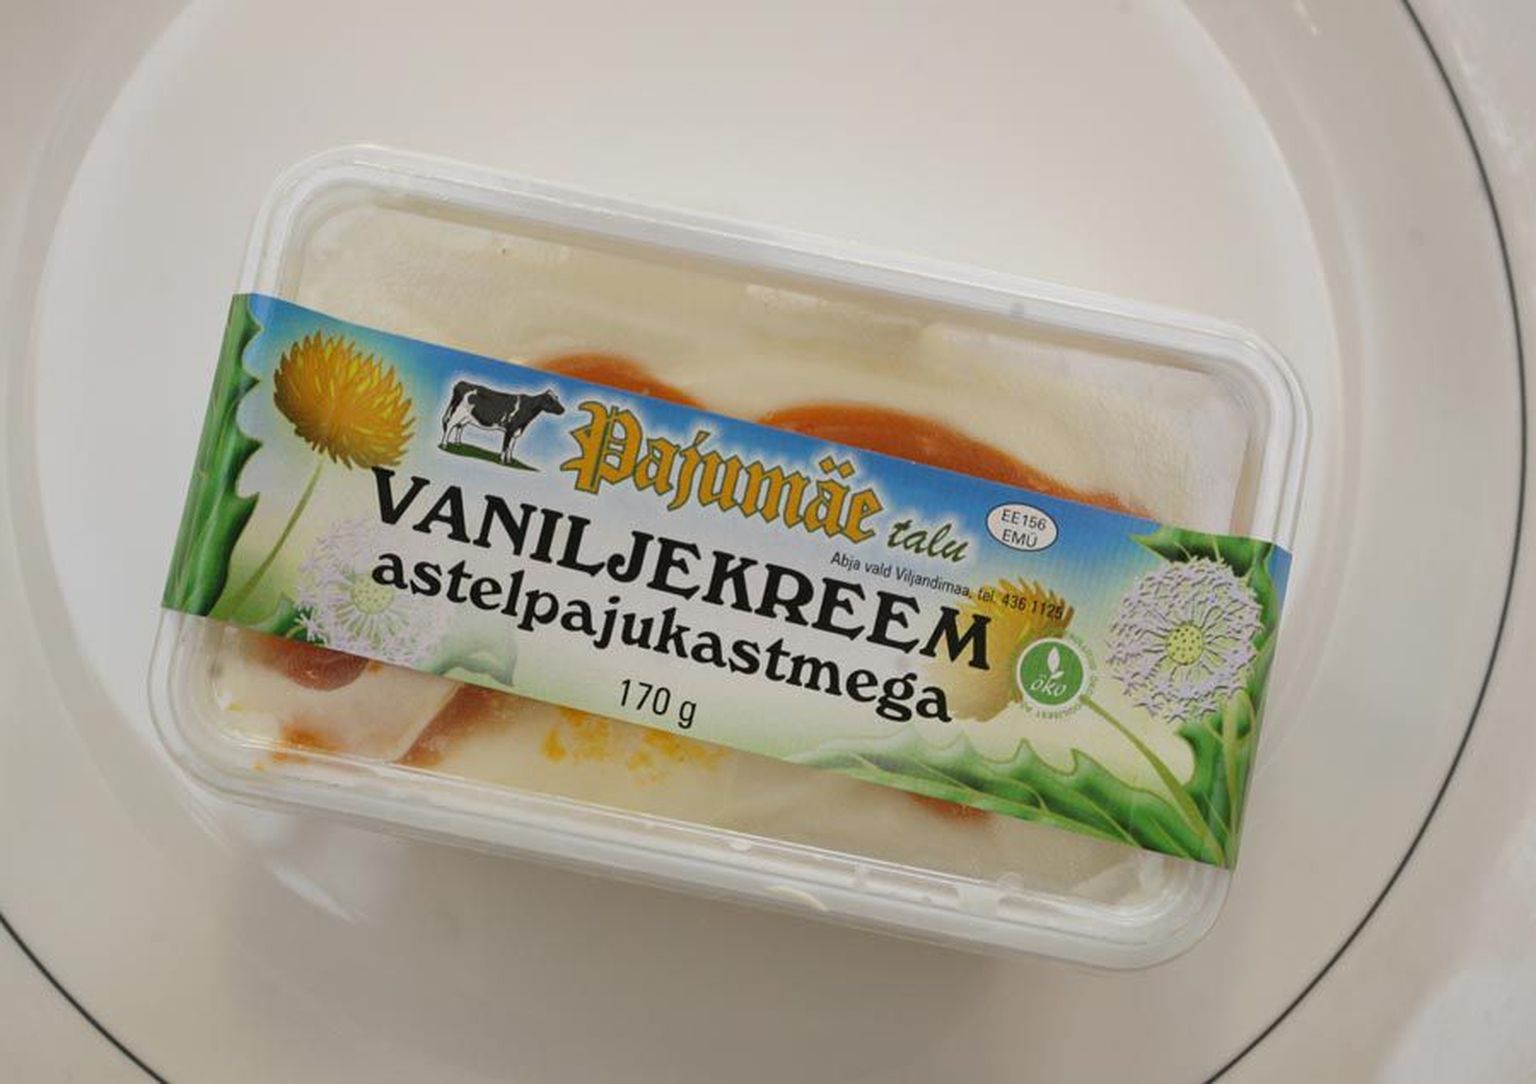 Pajumäe talus toodetud mahe vaniljekreem astelpaju kastmega tunnistati Lõuna-Eesti parimaks väikeettevõttes toodetud magusaks toiduaineks.